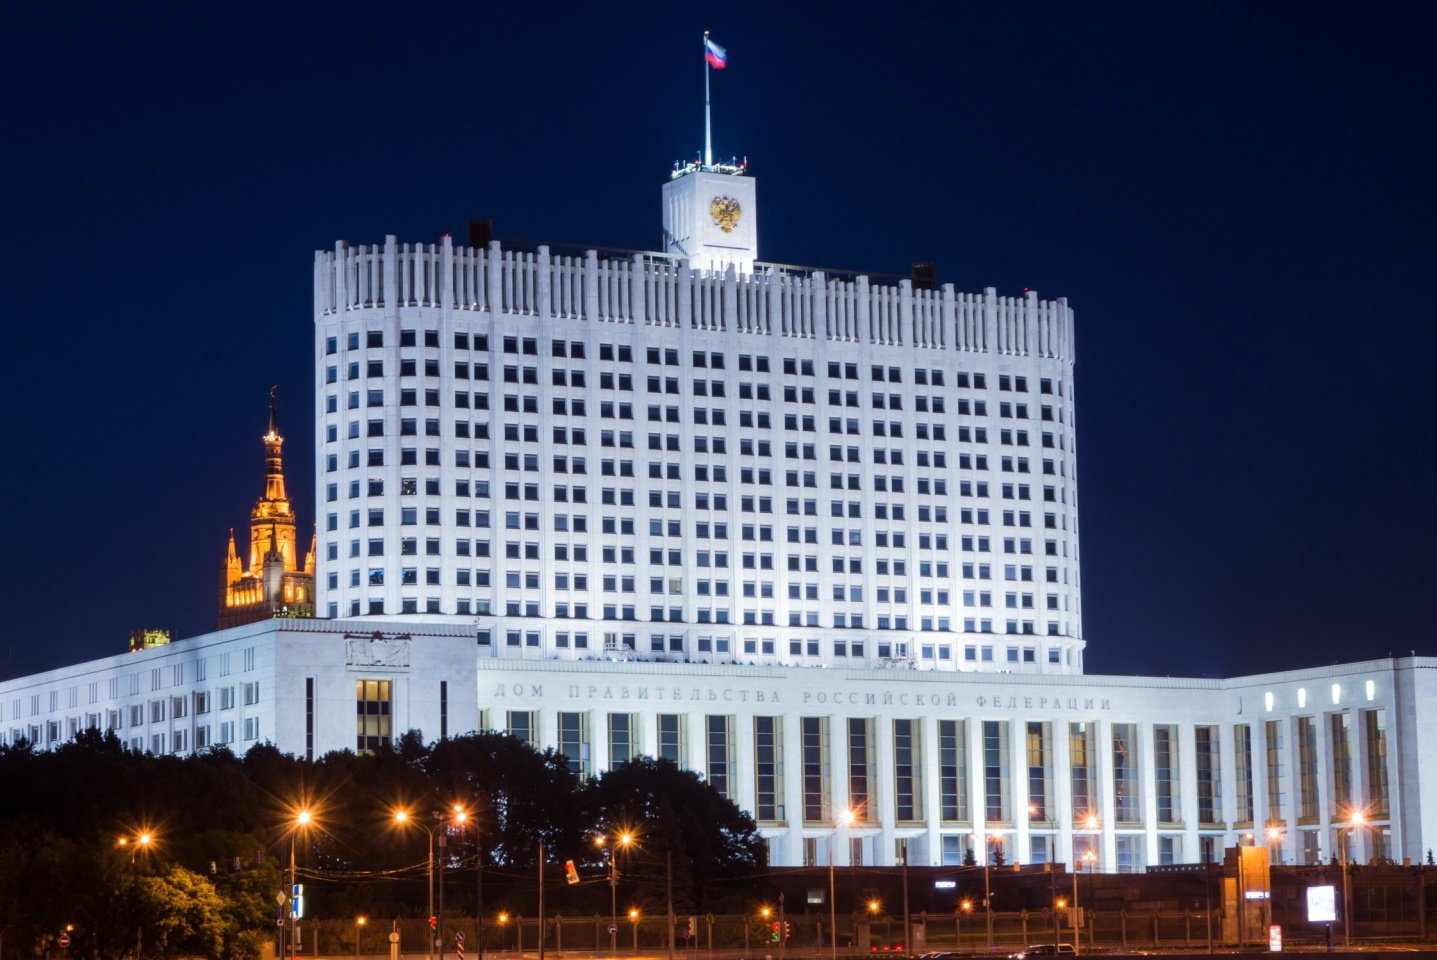 Внесены изменения в постановление Правительства Российской Федерации от от 17.07.2015 № 719